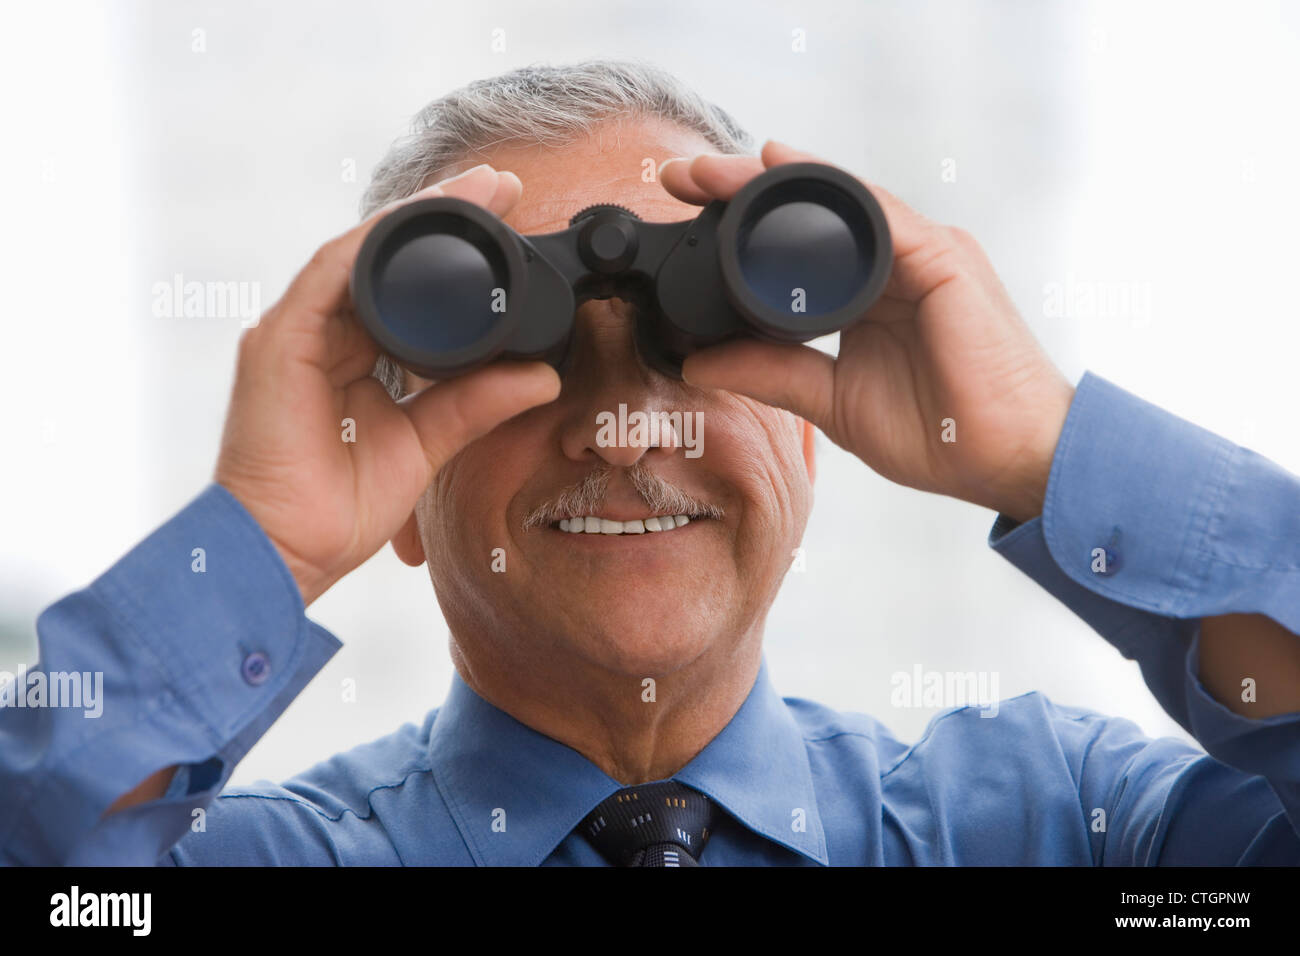 Hispanic businessman using binoculars Stock Photo